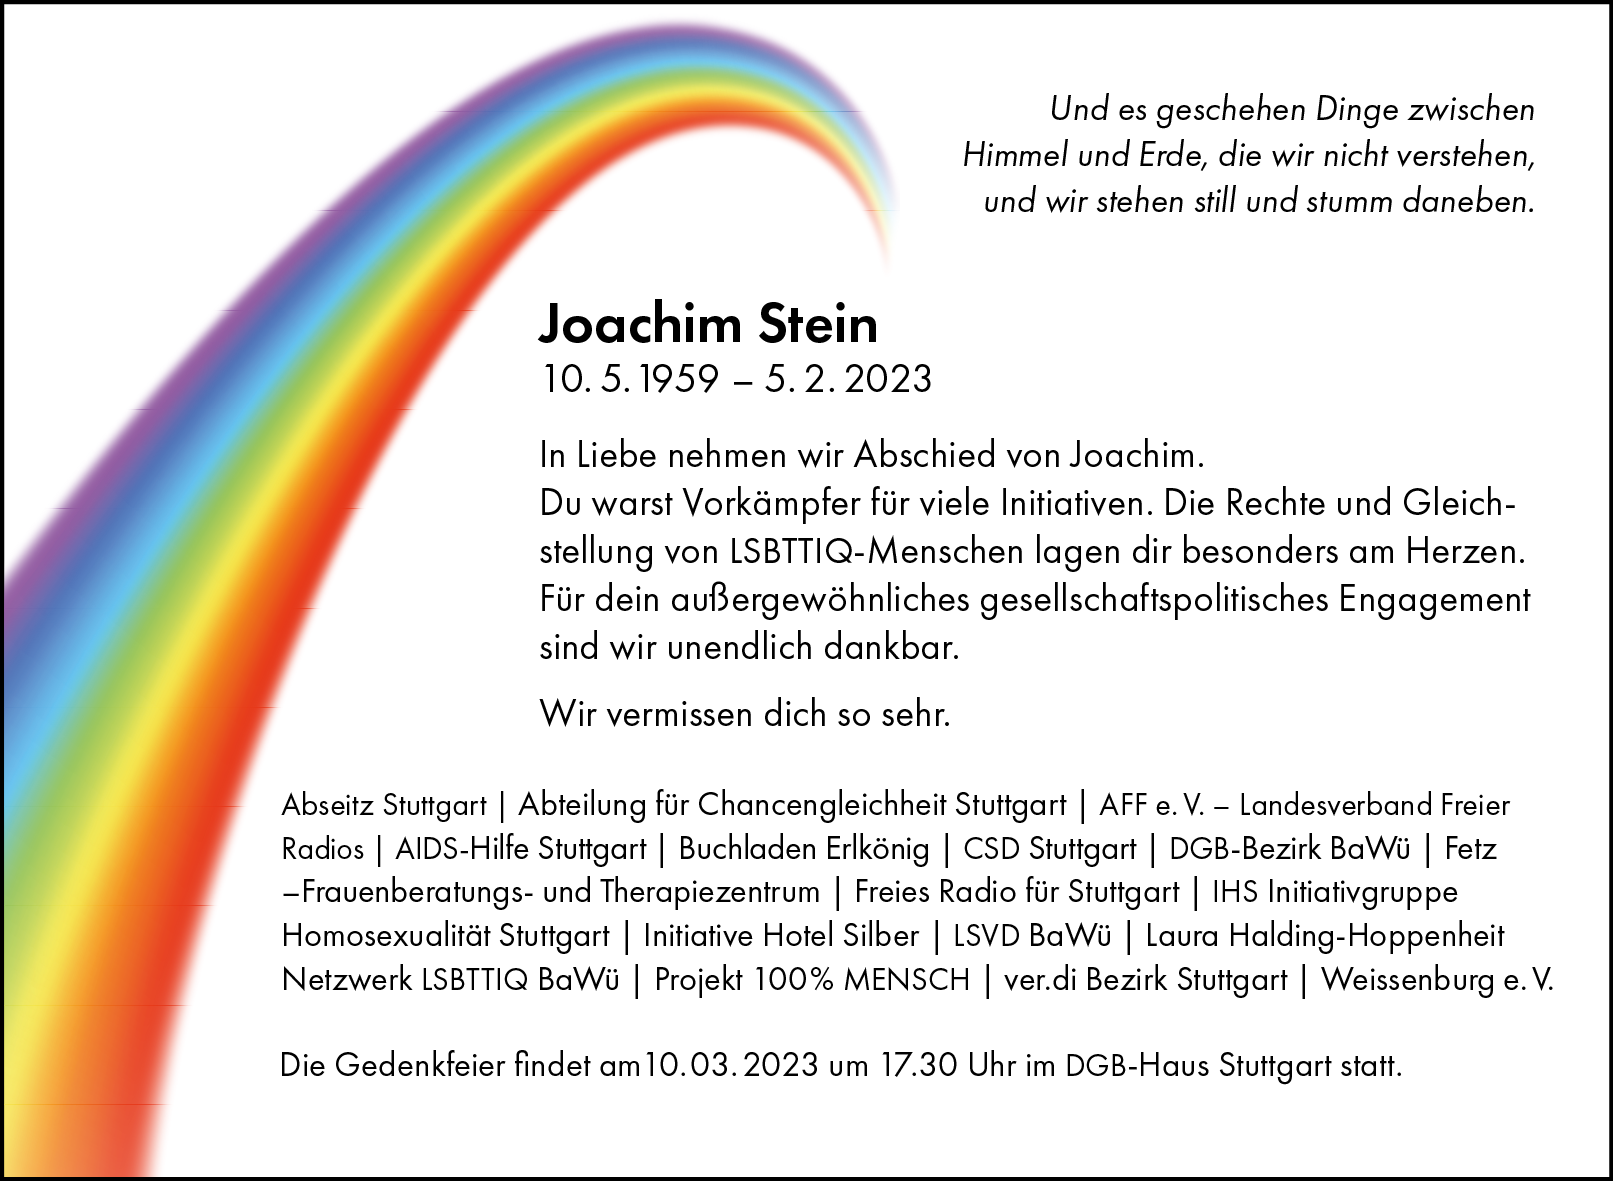 Stuttgart Pride - Mach‘s gut, lieber Joachim!